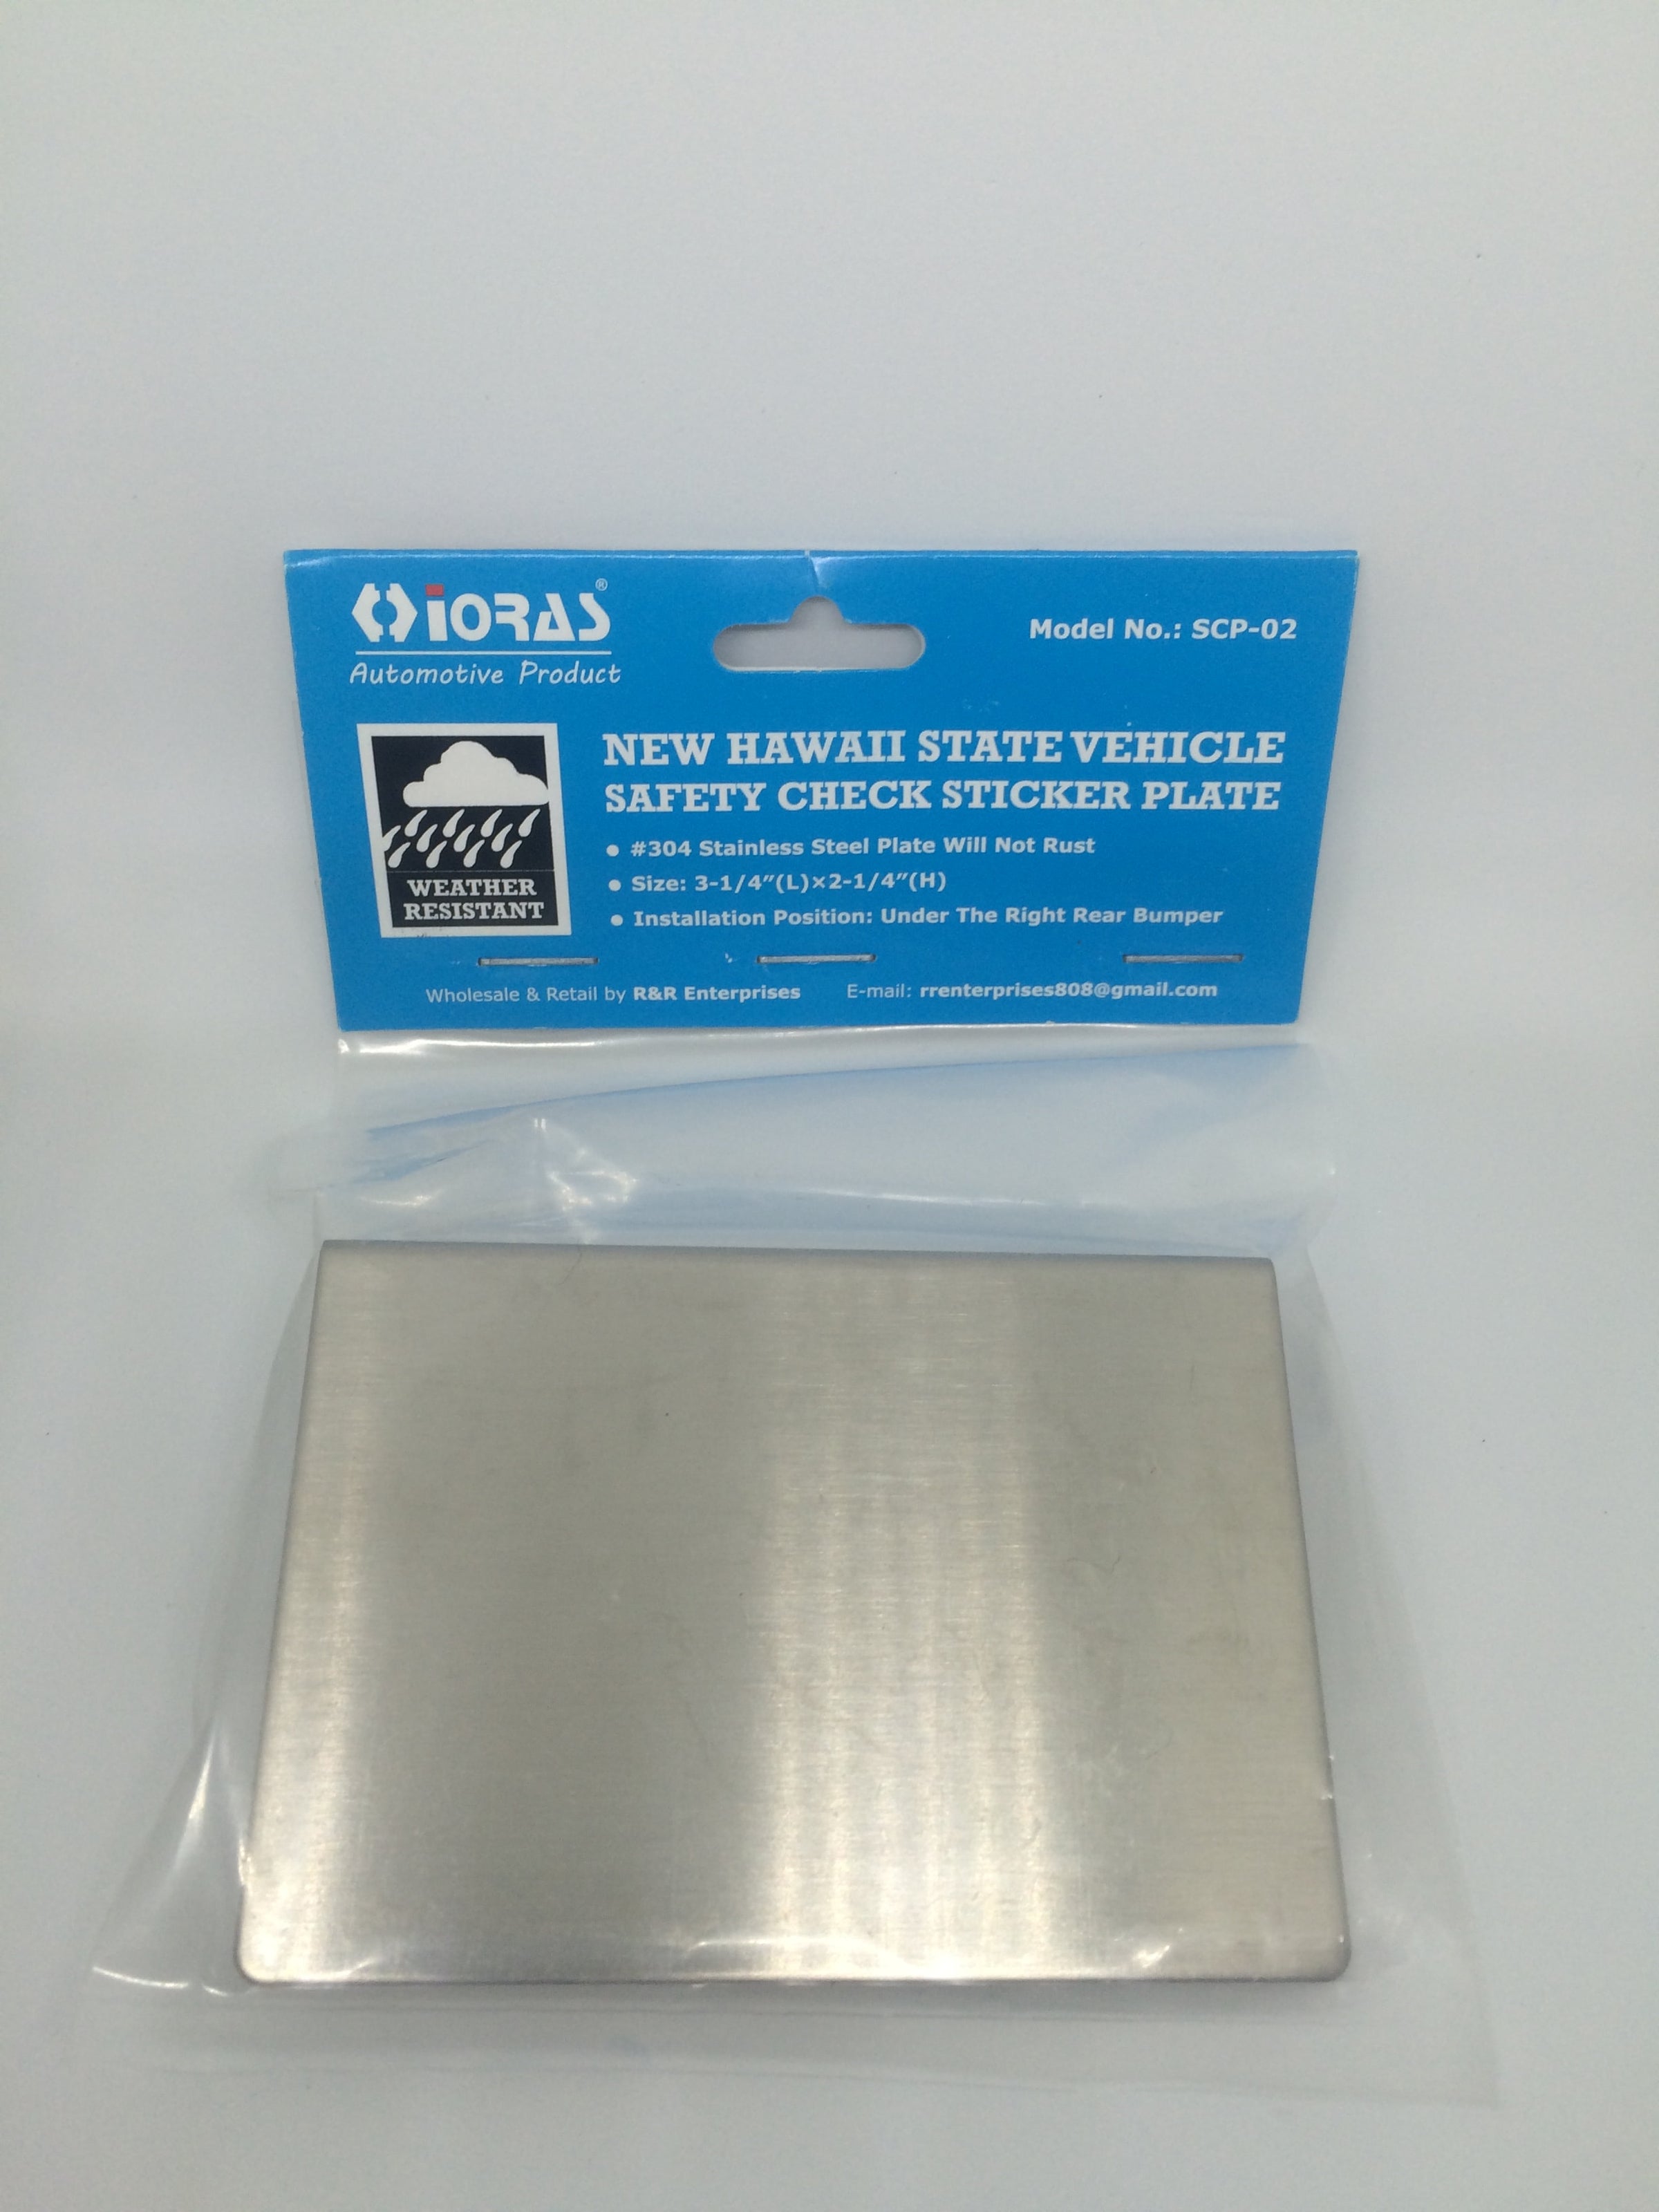 8 x 6 stainless steel permit sticker holder